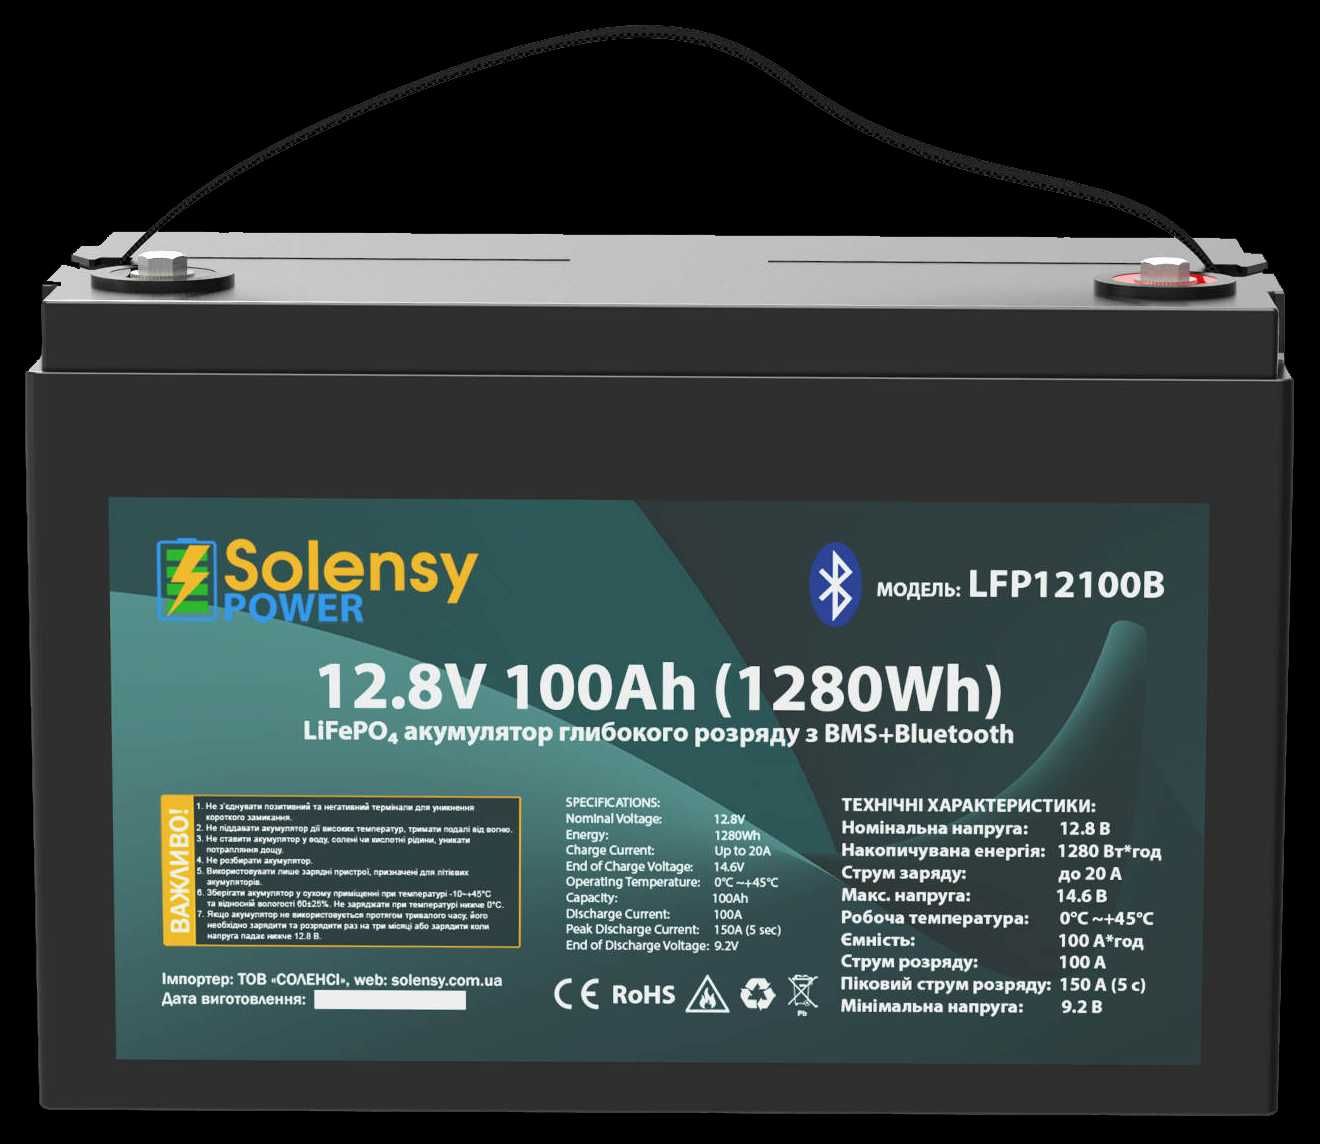 Акумулятор літієвий LiFePO4 Solensy POWER 12.8V 100Ah з Bluetooth